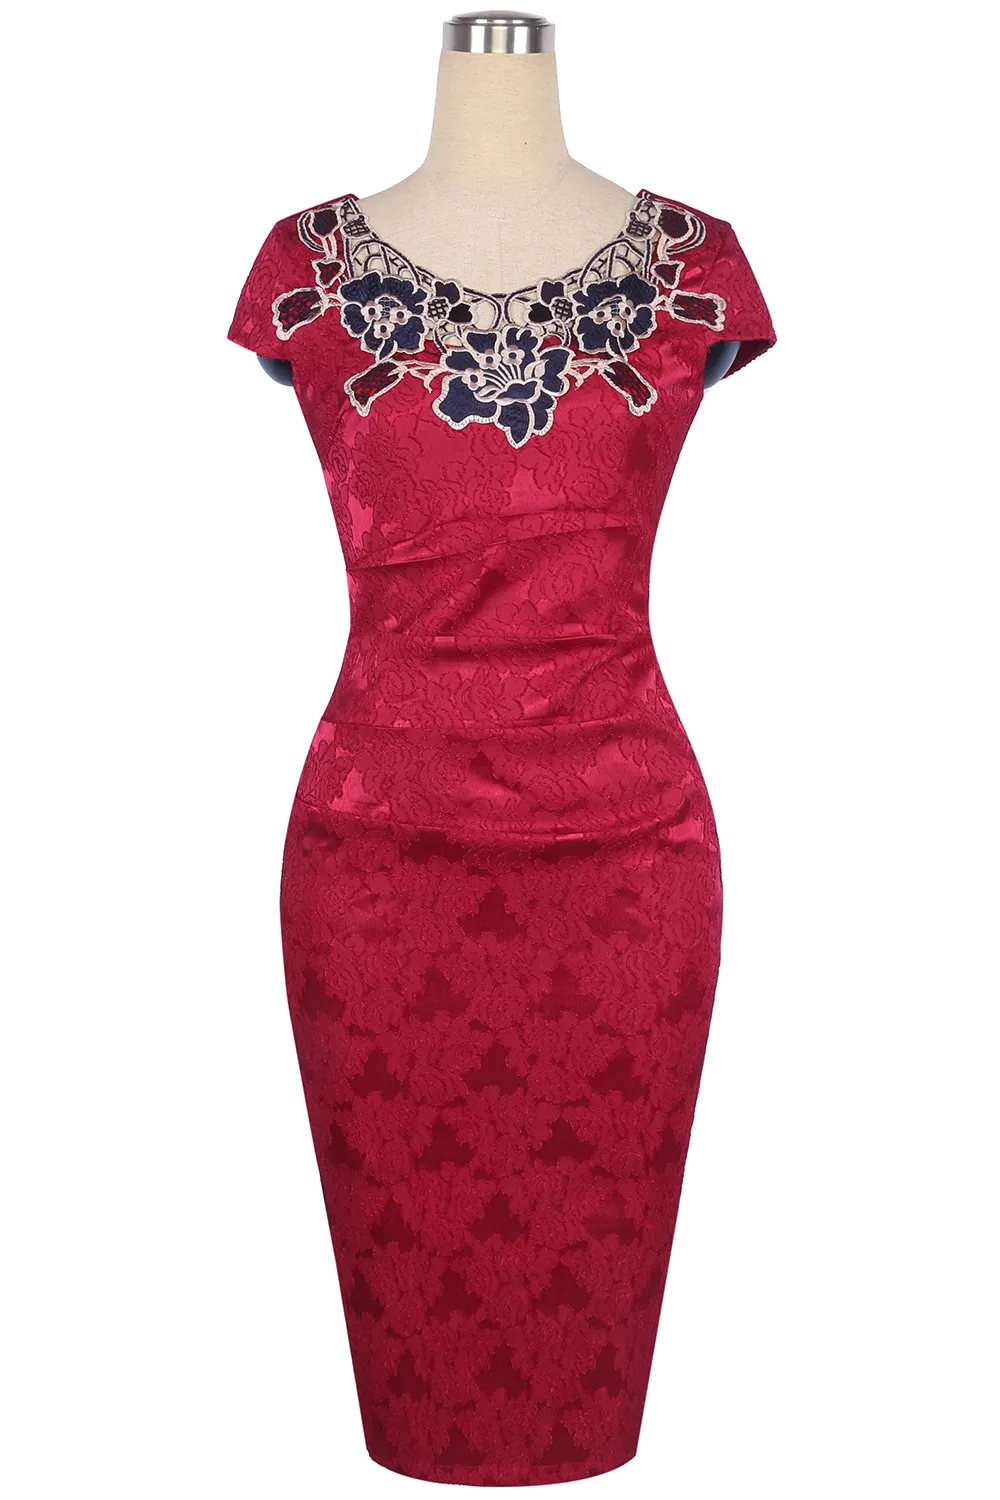 Elegant mantel vintage klänning 50s 60s retro för kvinnor marin röd blommig nackbandage midi festklänningar FS1091 FS0009 FS0018 FS1393